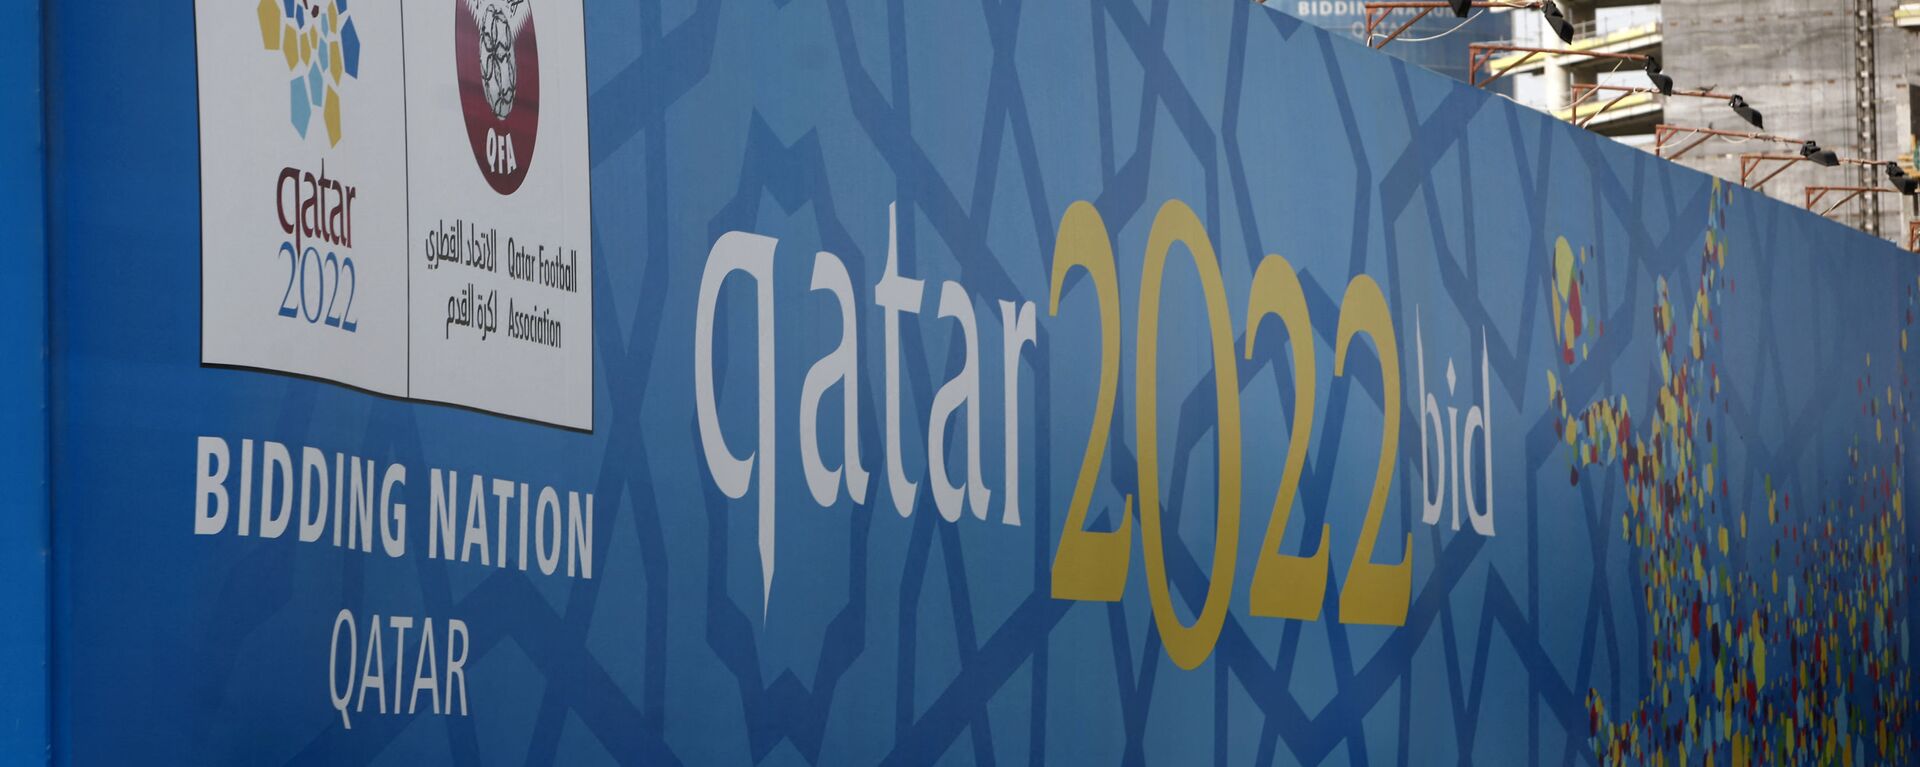 Quảng cáo trên đường bờ biển Doha về Giải vô địch bóng đá thế giới tại Qatar 2022. - Sputnik Việt Nam, 1920, 20.09.2021